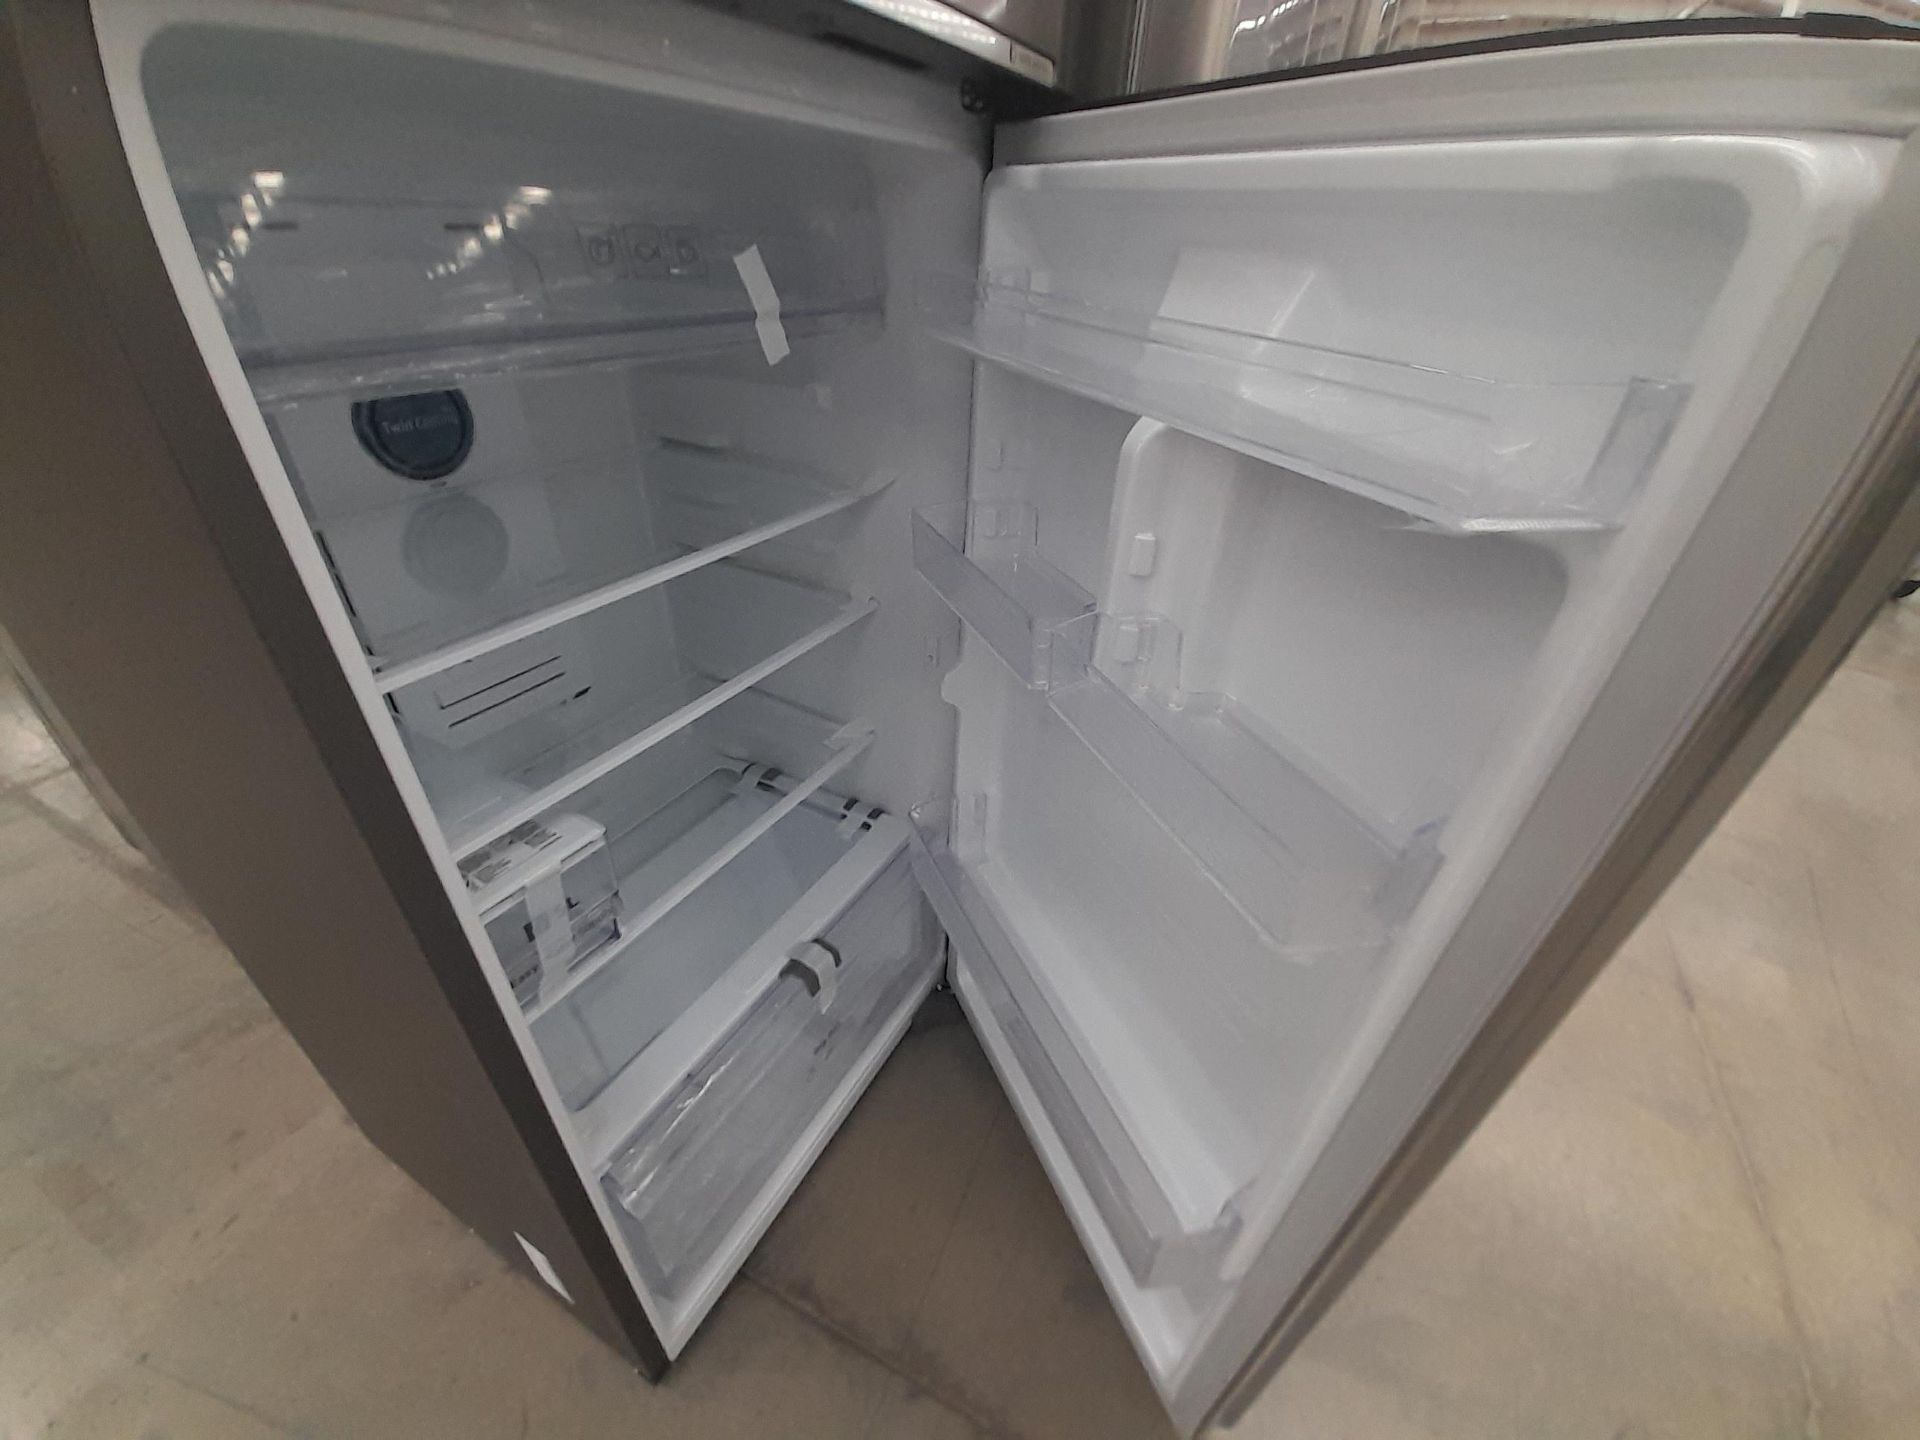 (NUEVO) Lote de 1 Refrigerador con dispensador de agua Marca SAMSUNG, Modelo RT38A5982SL, Serie 002 - Image 5 of 6